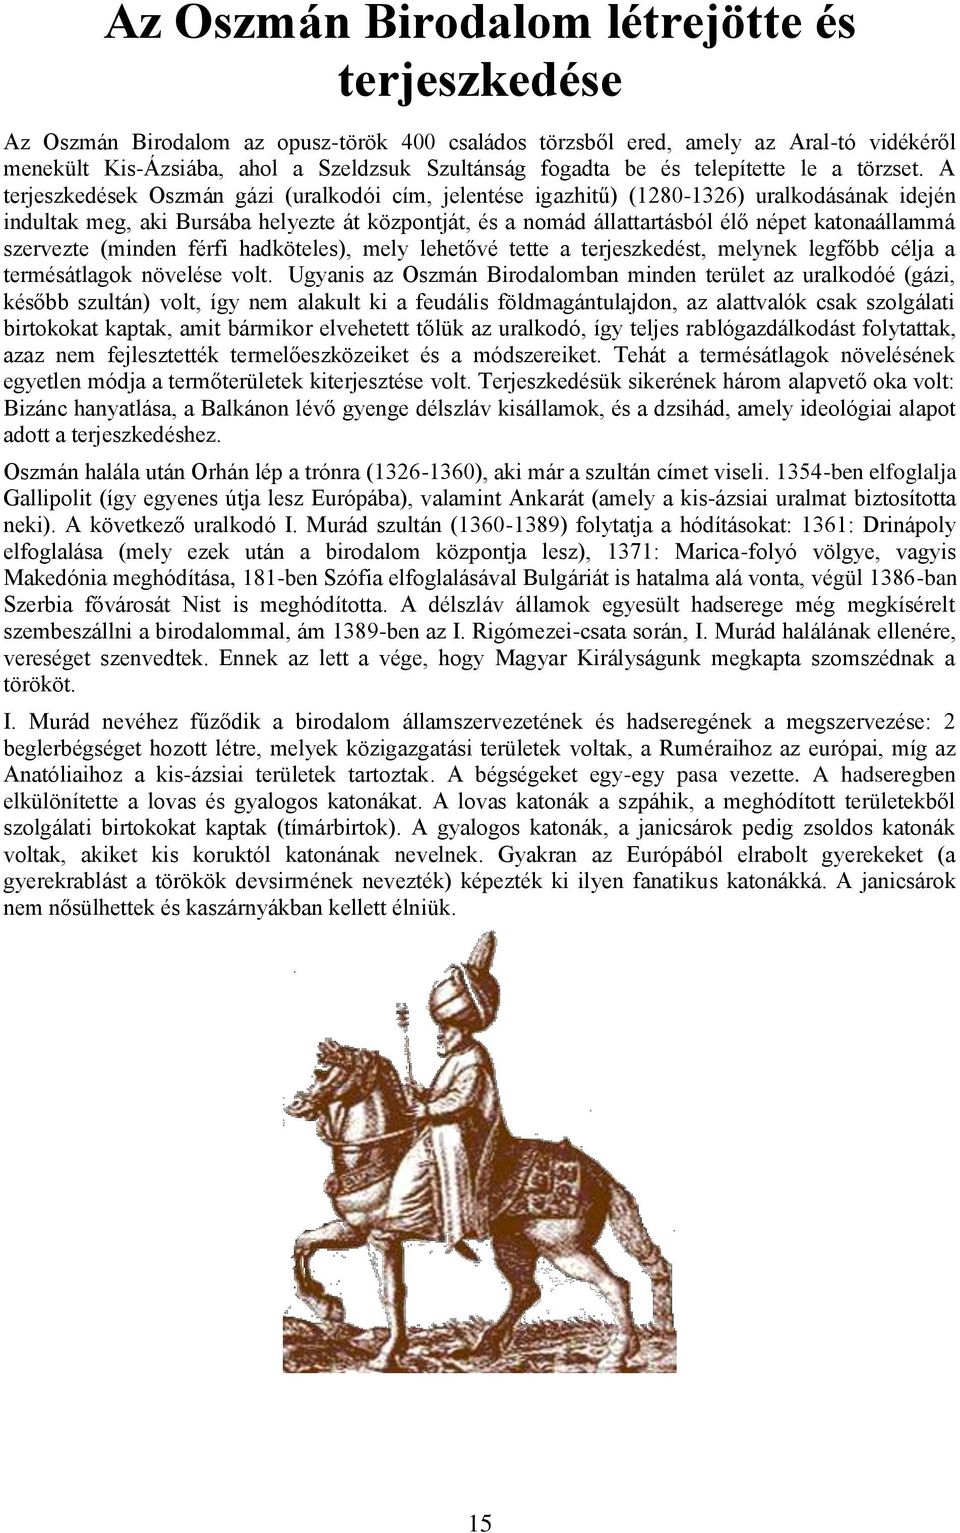 A terjeszkedések Oszmán gázi (uralkodói cím, jelentése igazhitű) (1280-1326) uralkodásának idején indultak meg, aki Bursába helyezte át központját, és a nomád állattartásból élő népet katonaállammá